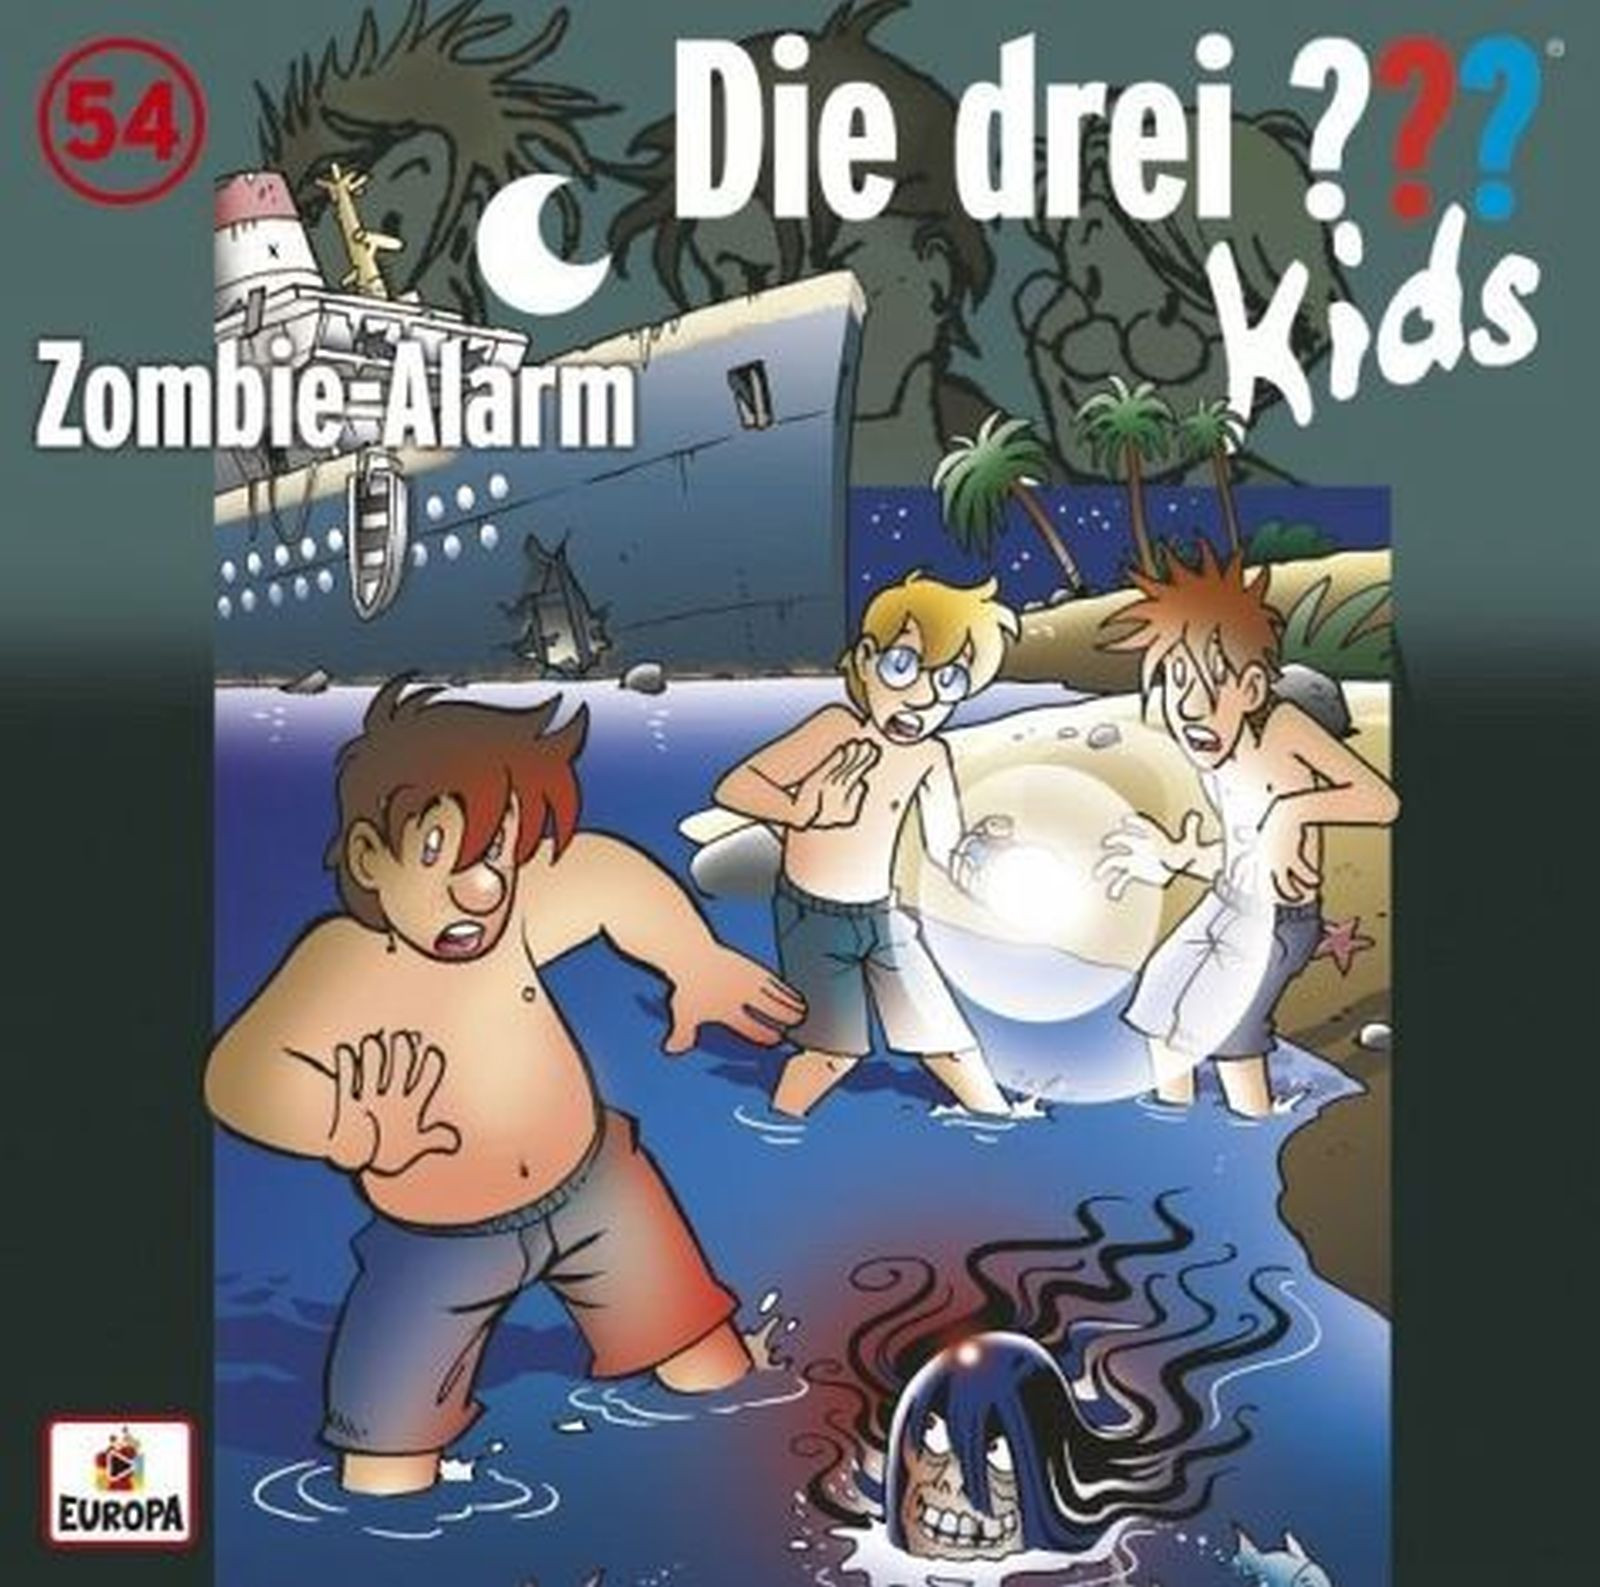 Die drei ??? Fragezeichen Kids - Folge 54: Zombie-Alarm